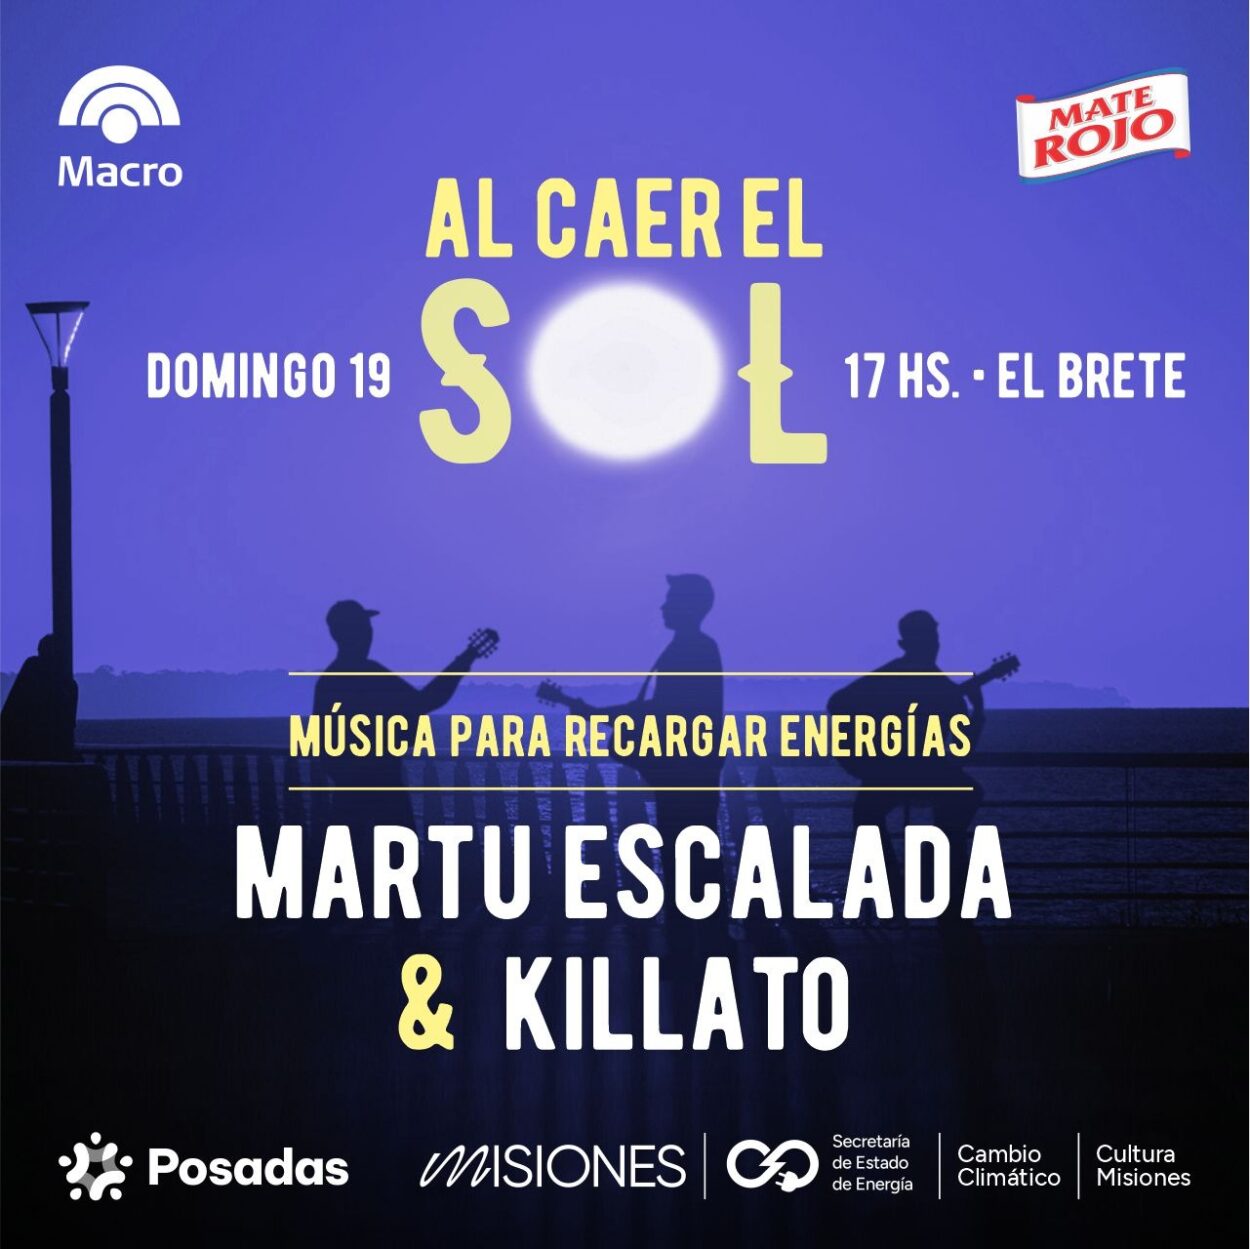 Martu Escalada y Killato: rock y música urbana este domingo “Al caer el sol en El Brete” imagen-11